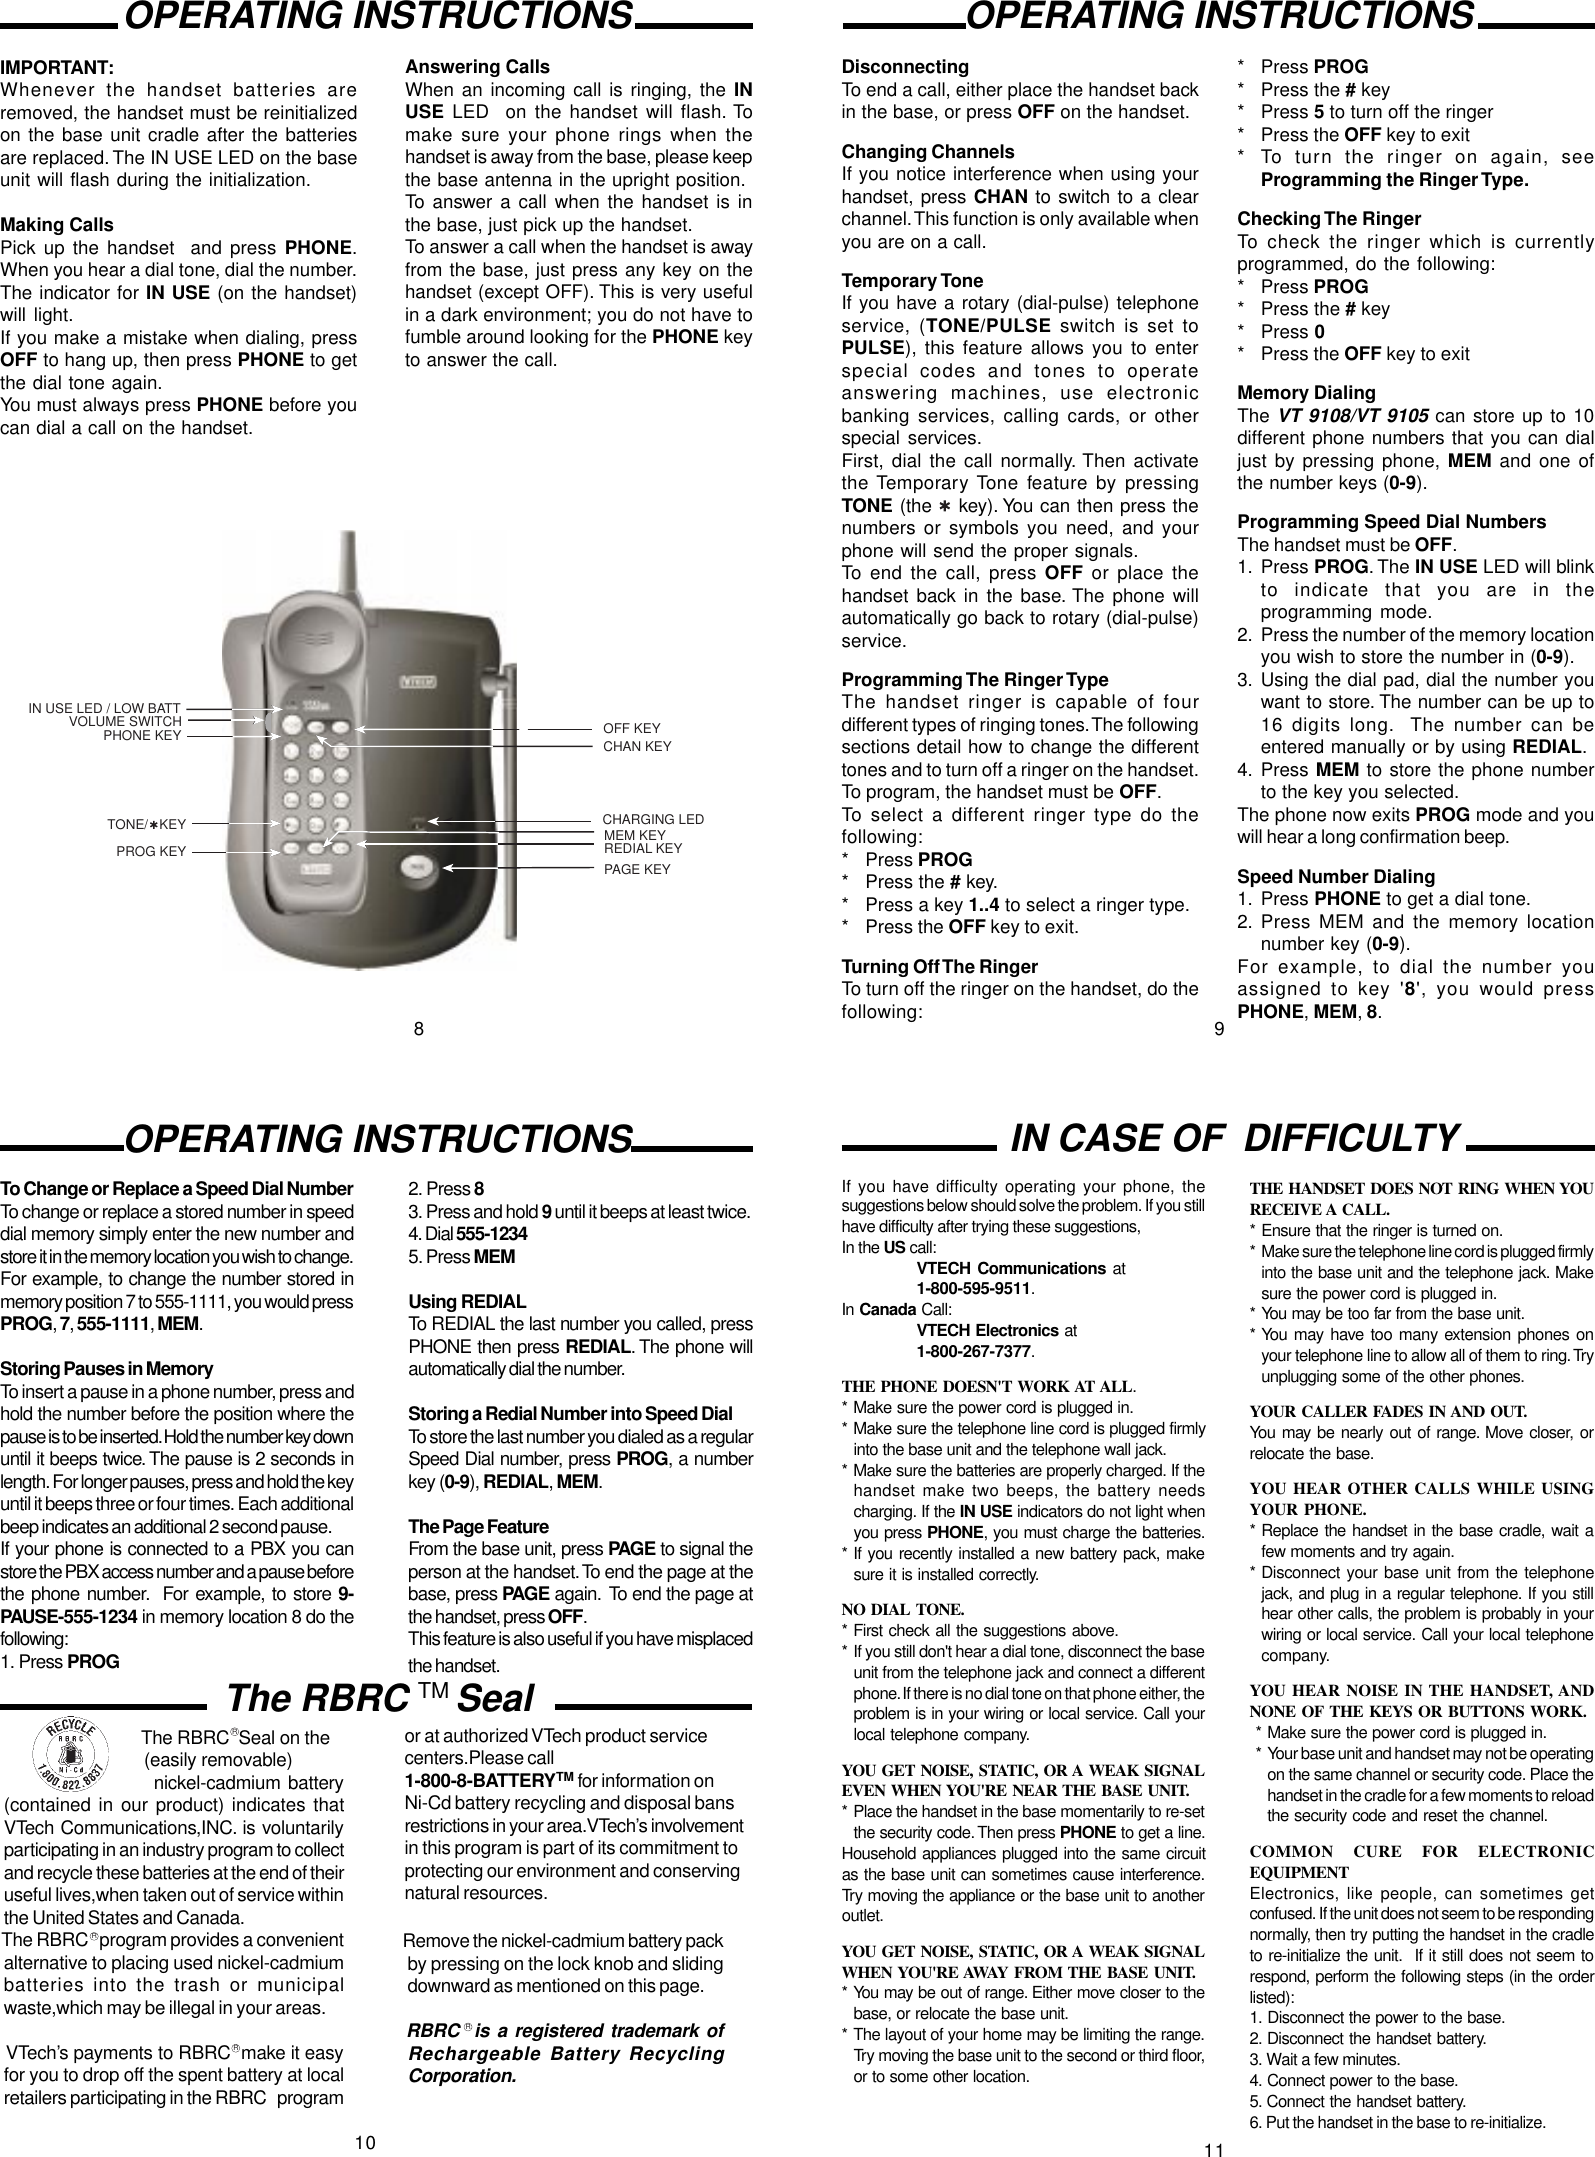 Page 3 of 4 - Vtech Vtech-Vt-9105-Users-Manual- U9108MAN  Vtech-vt-9105-users-manual